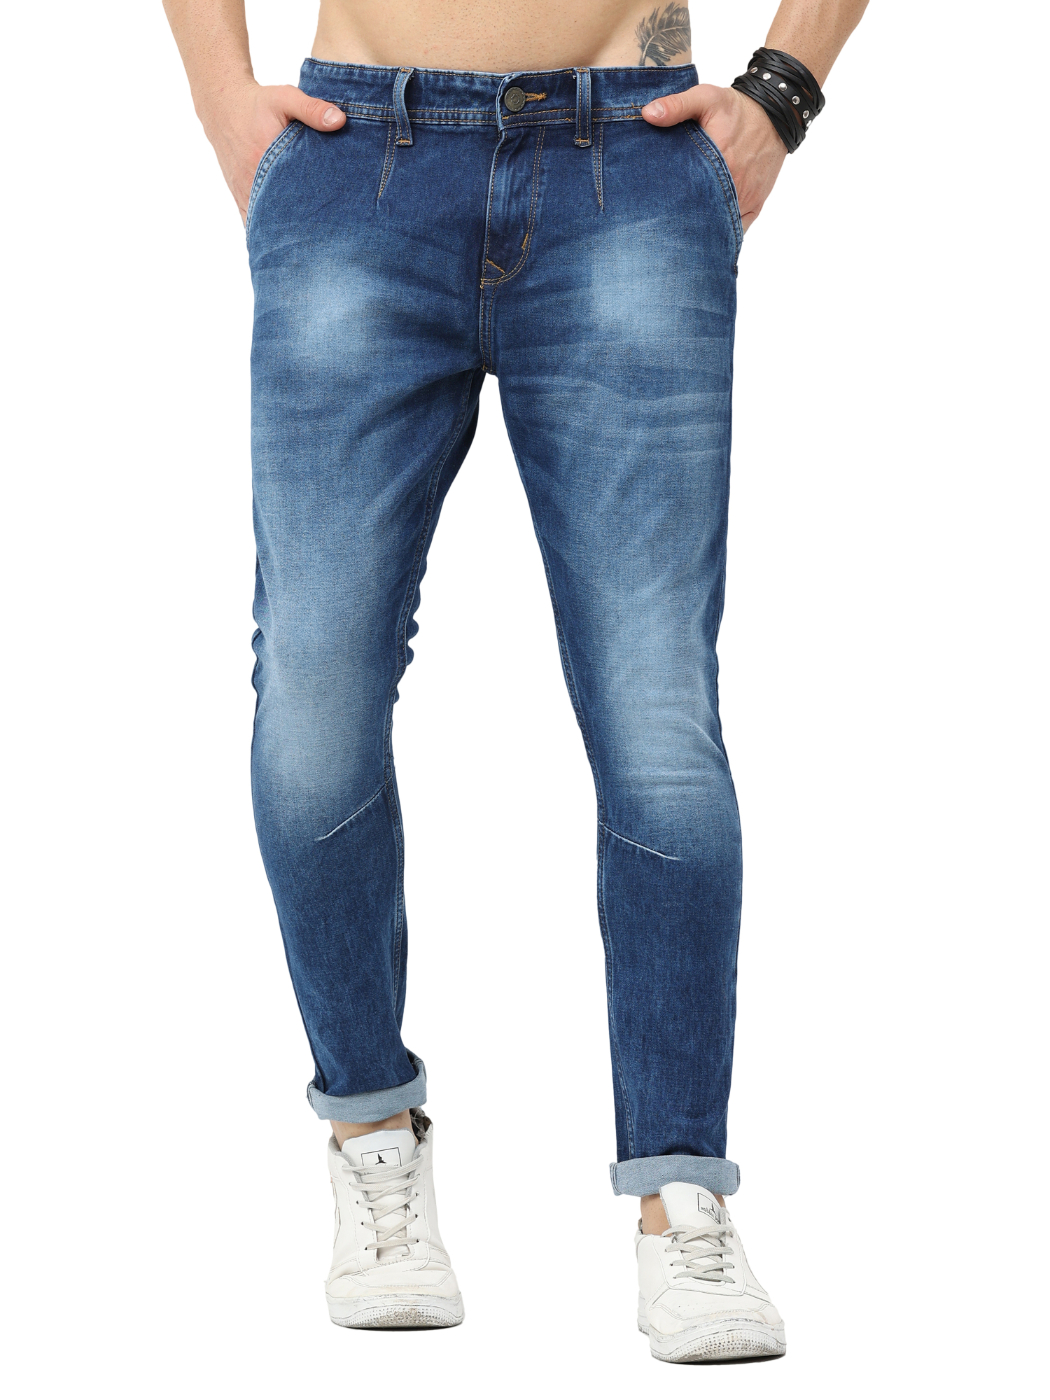 Denim Slim Fit Jeans For Men Heavy Stretchable Jeans Blue Pant, Blue  Colour, 30 Size -